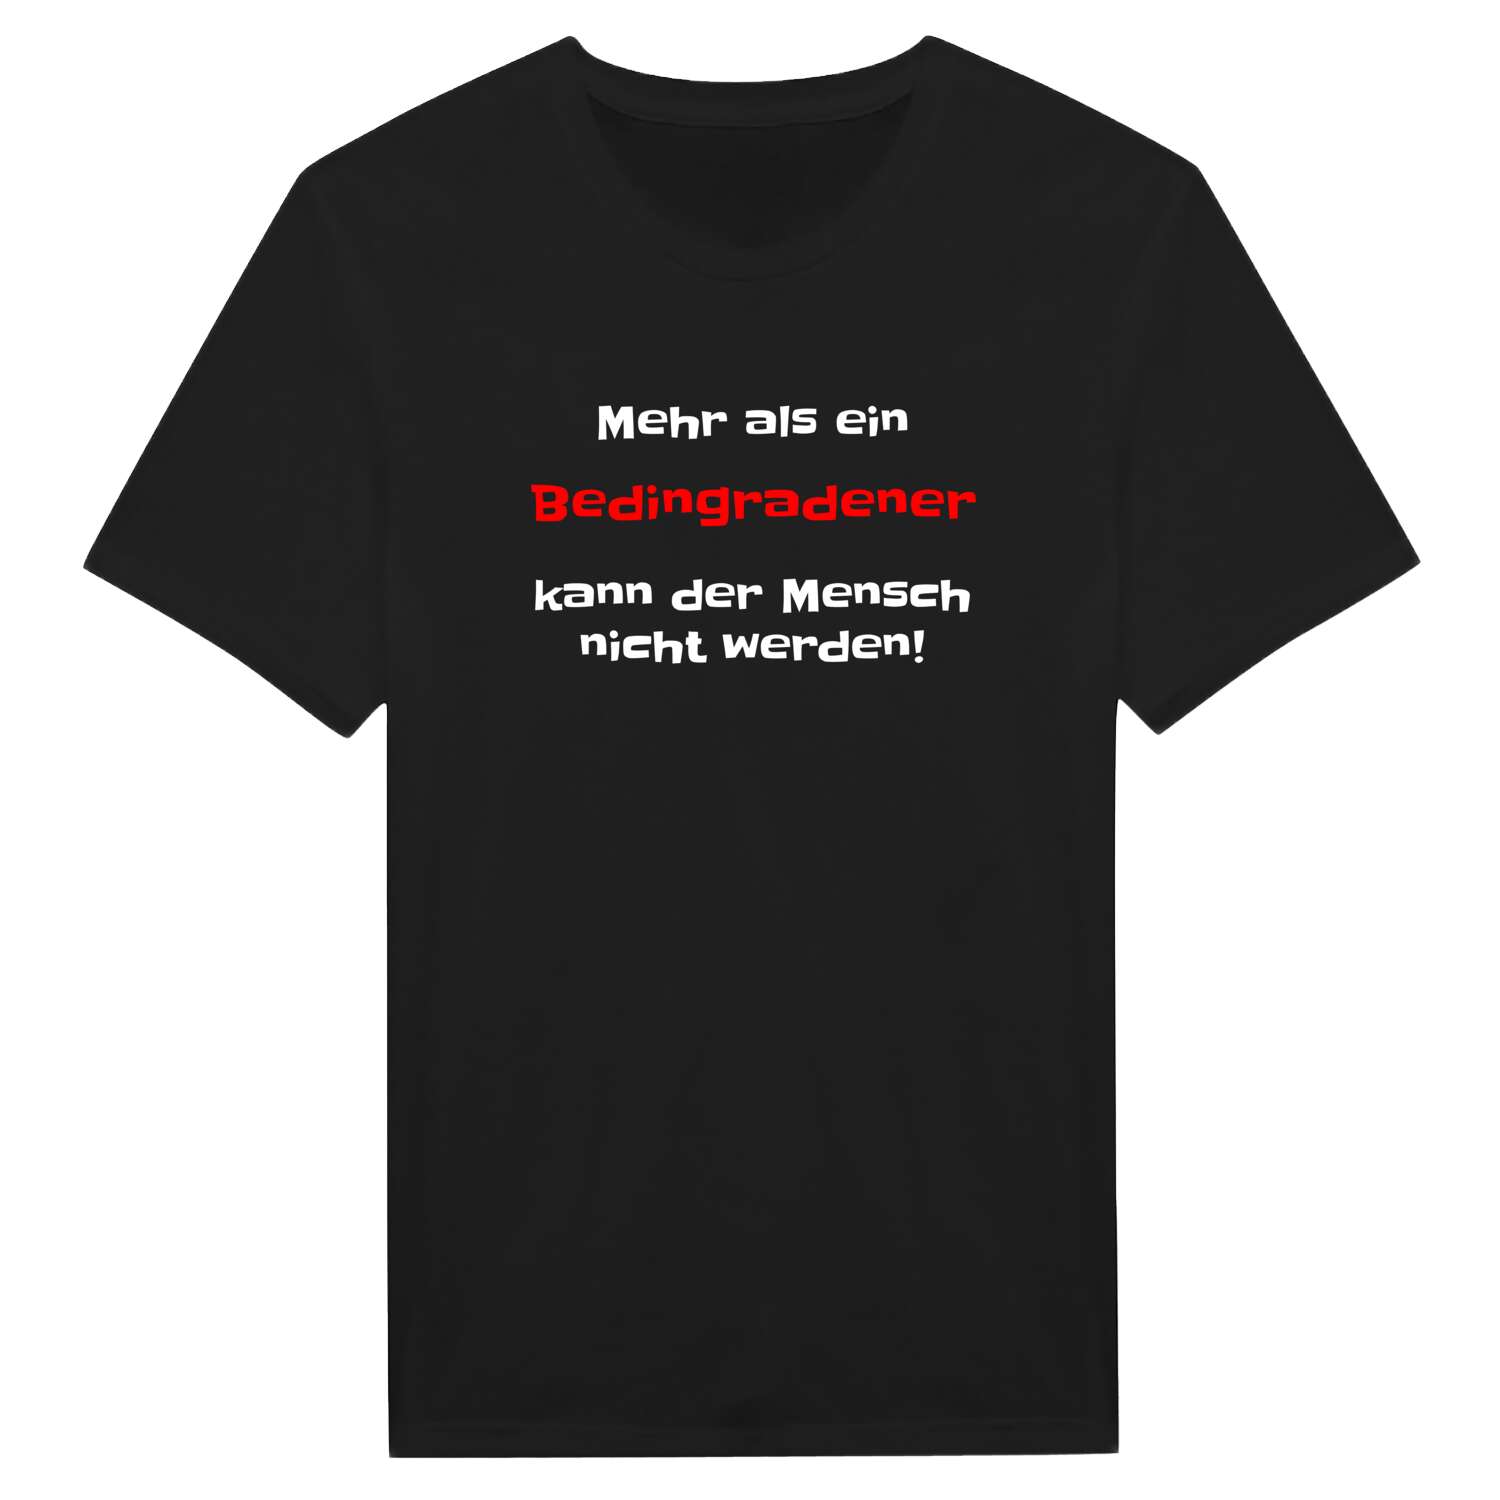 Bedingrade T-Shirt »Mehr als ein«